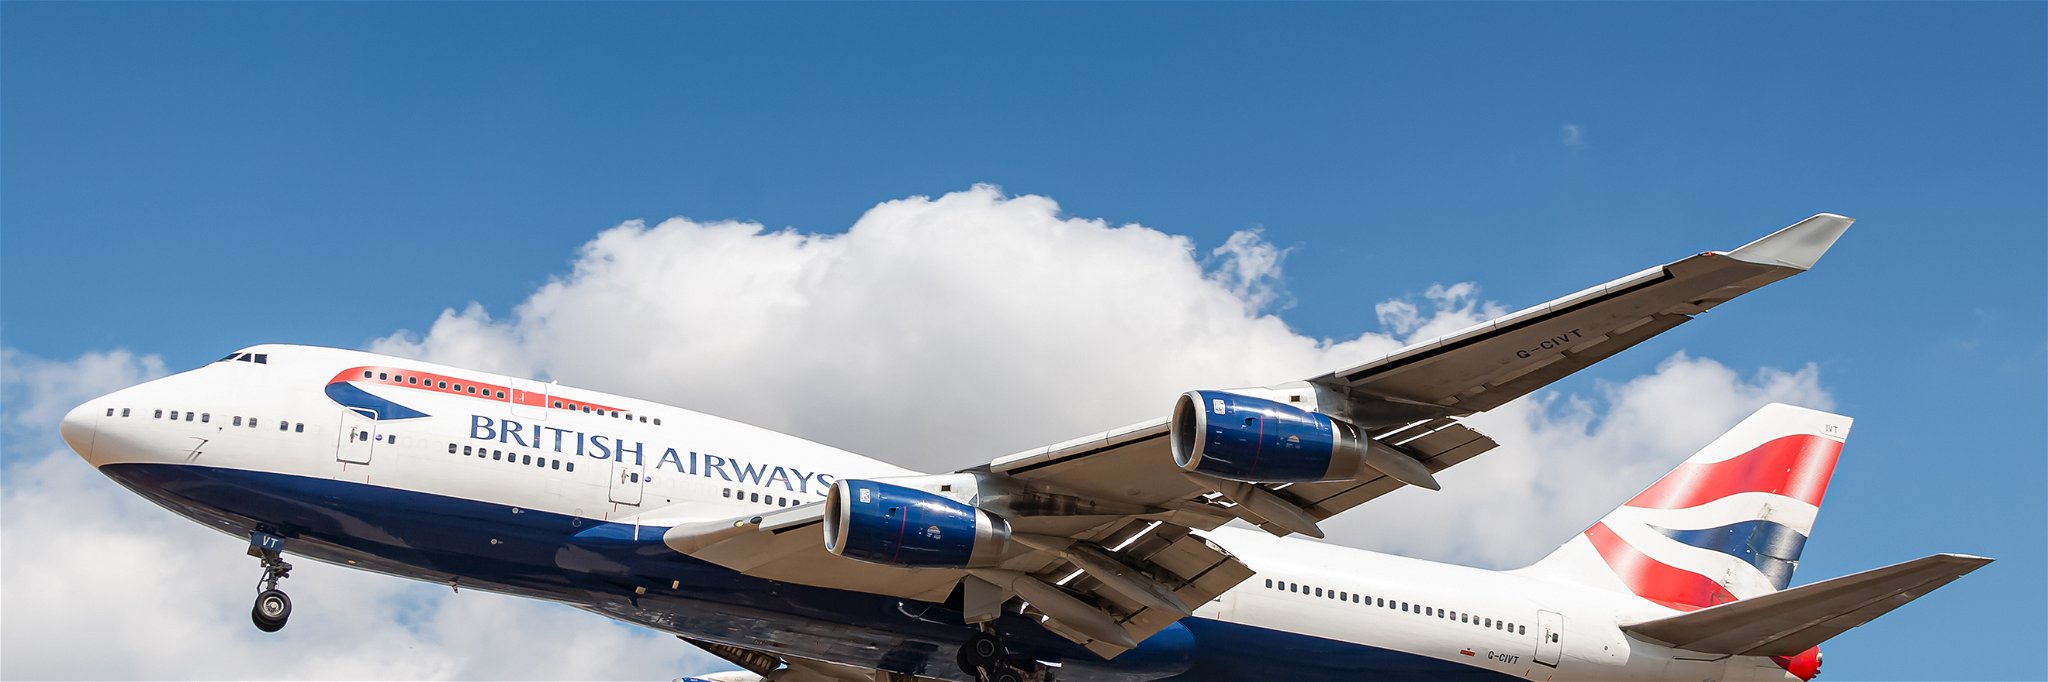 British Airways Boeing 747 airplane at London Heathrow.